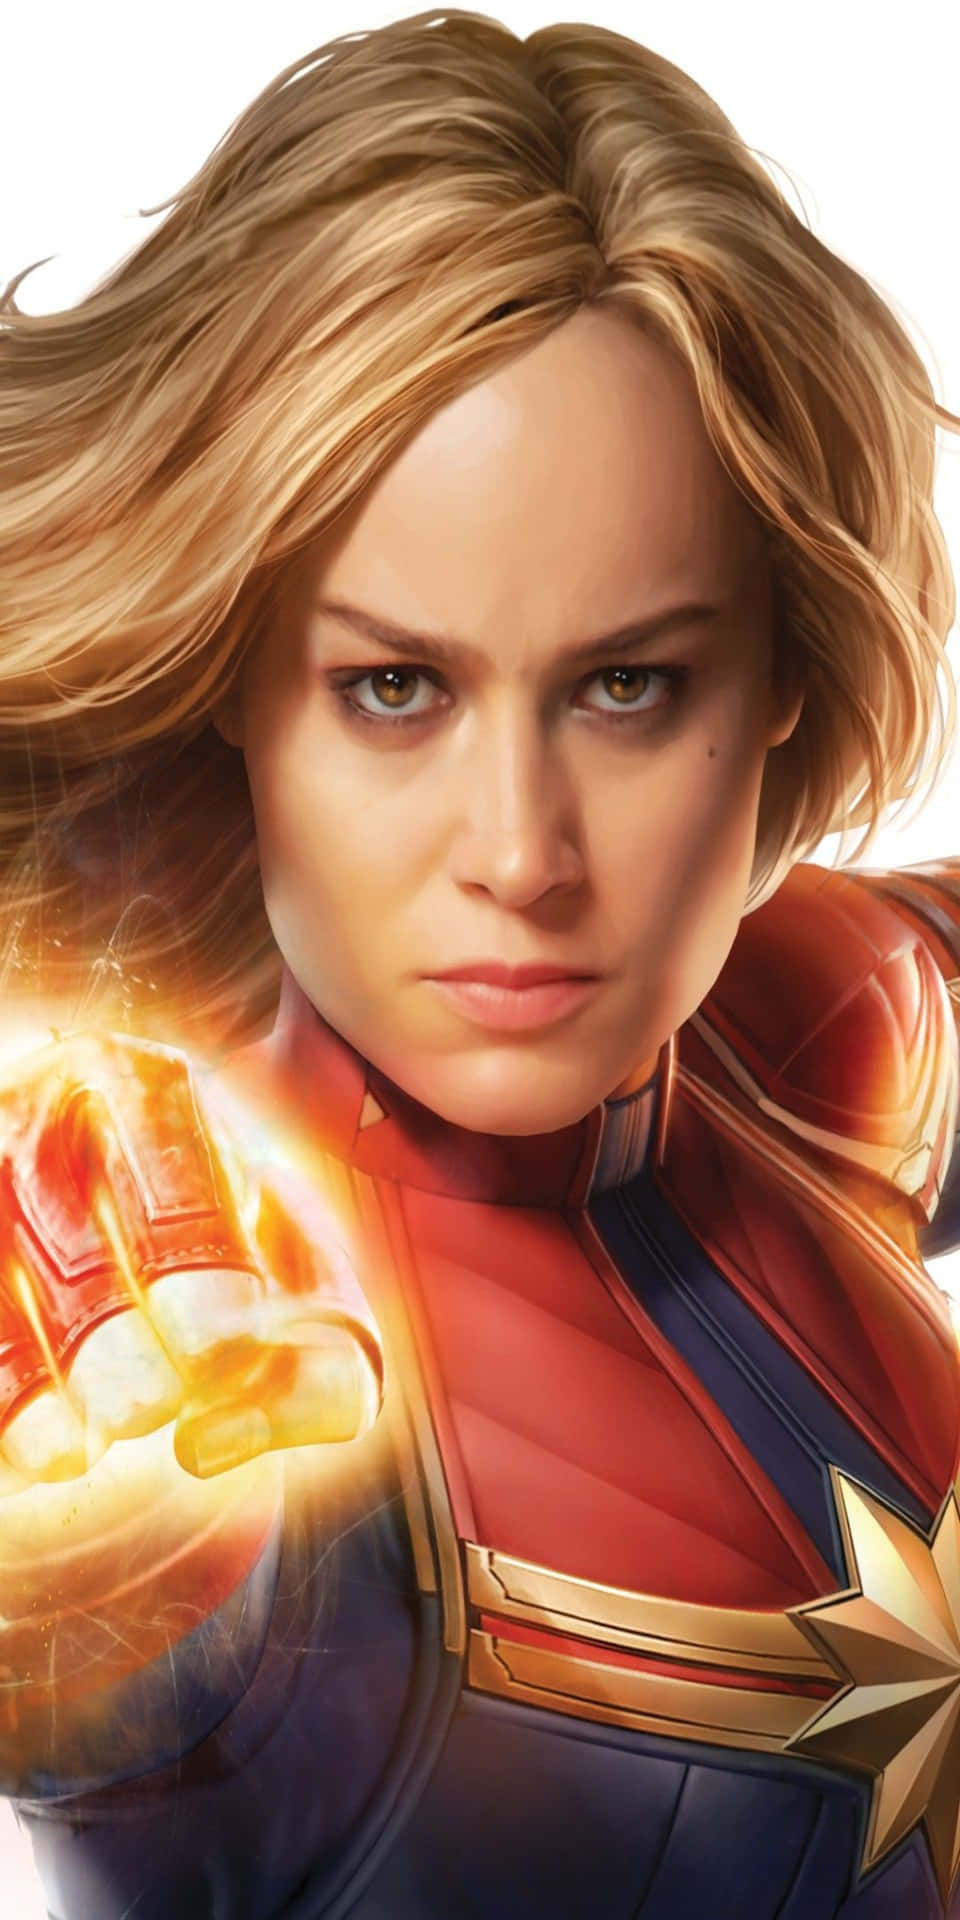 Fondode Pantalla De Brie Larson En Primer Plano Con El Smartphone Pixel 3 De Captain Marvel.